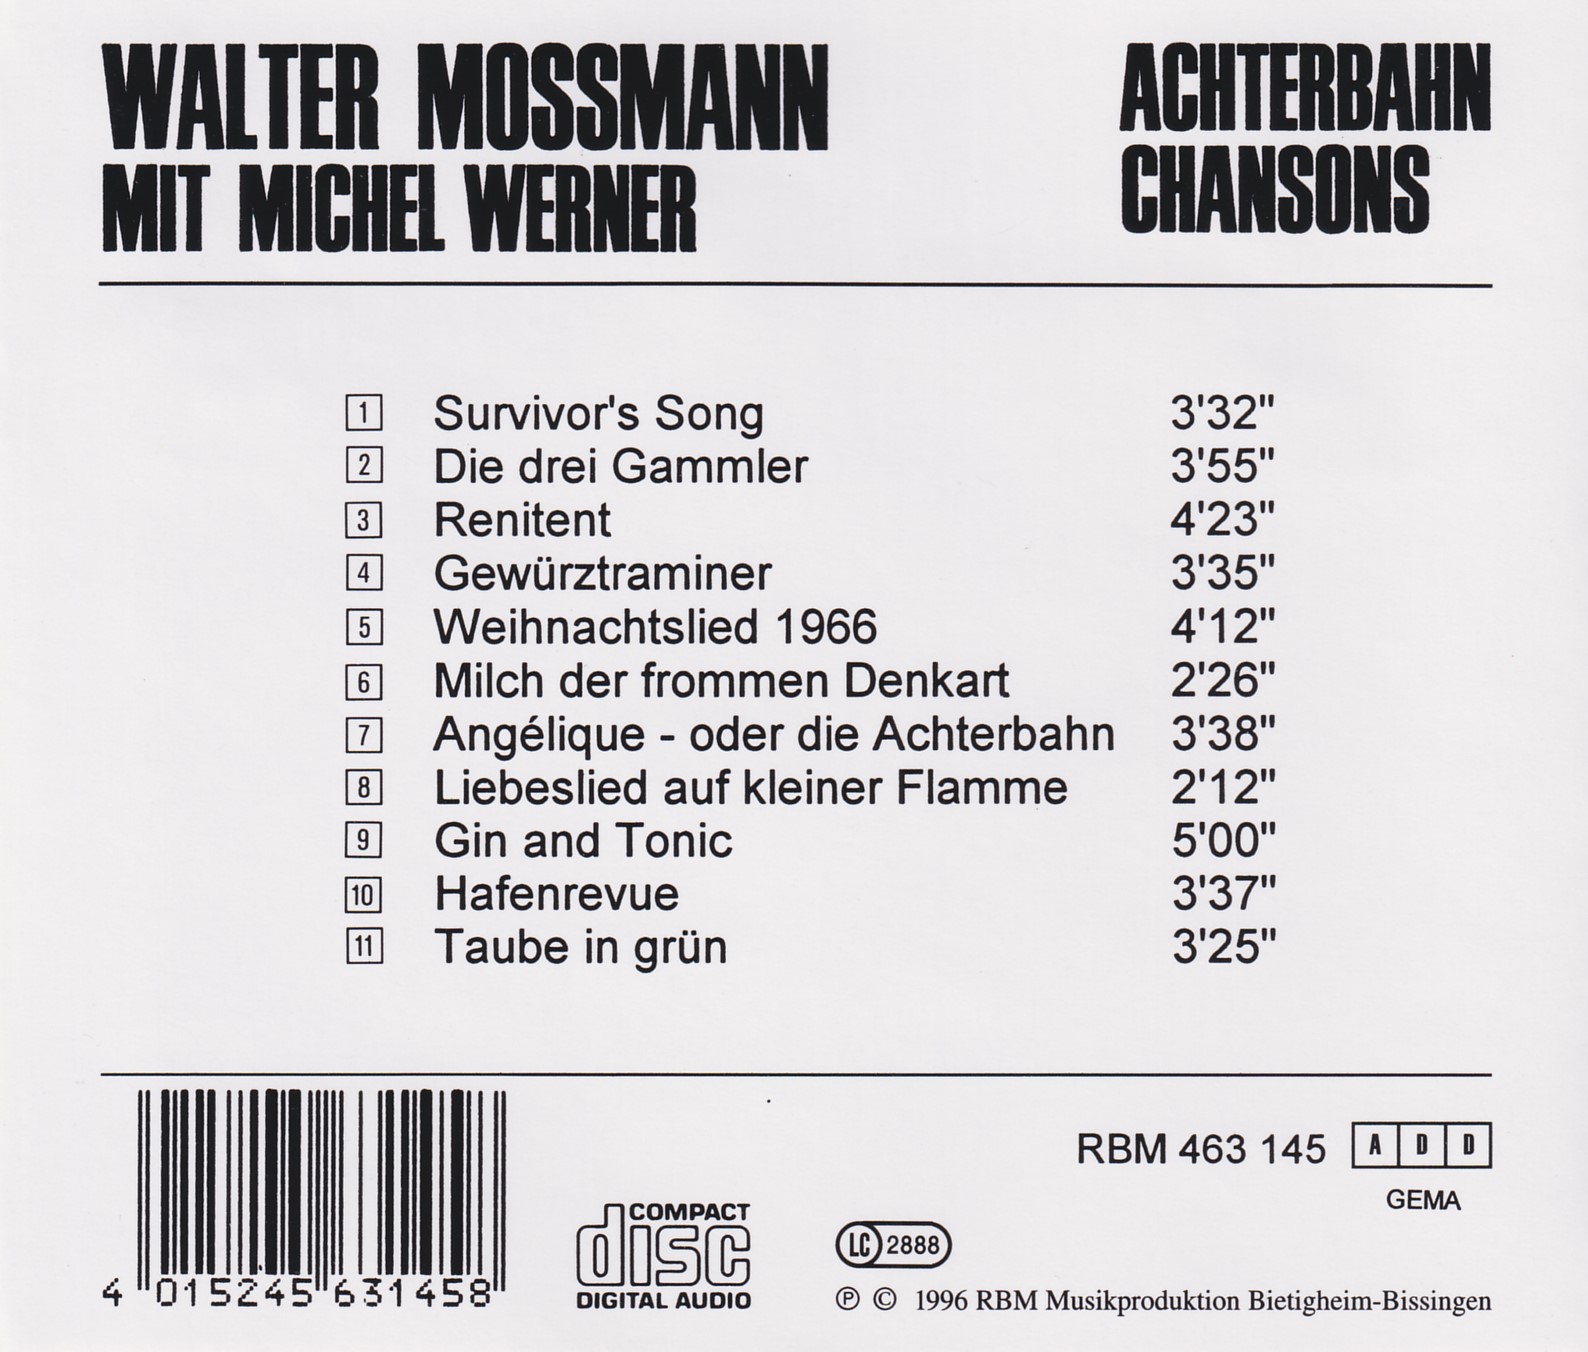 Walter Mossmann - Achterbahn